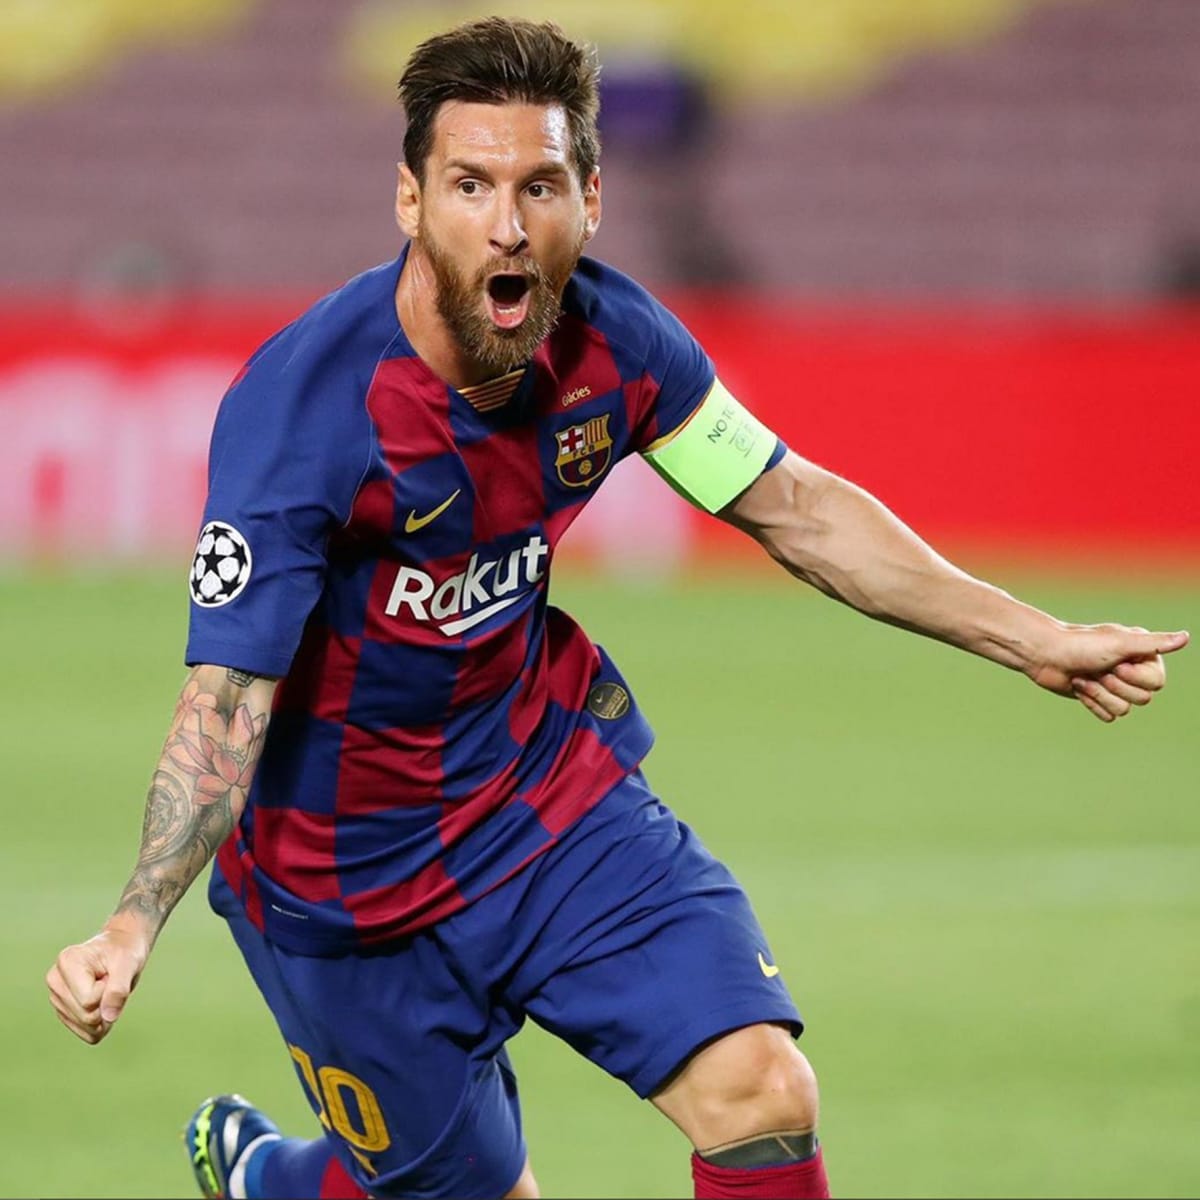 Hovoří se o tom, že v případě dotažení přestupu by měl Messi celkově zinkasovat 750 milionů eur za pět let.